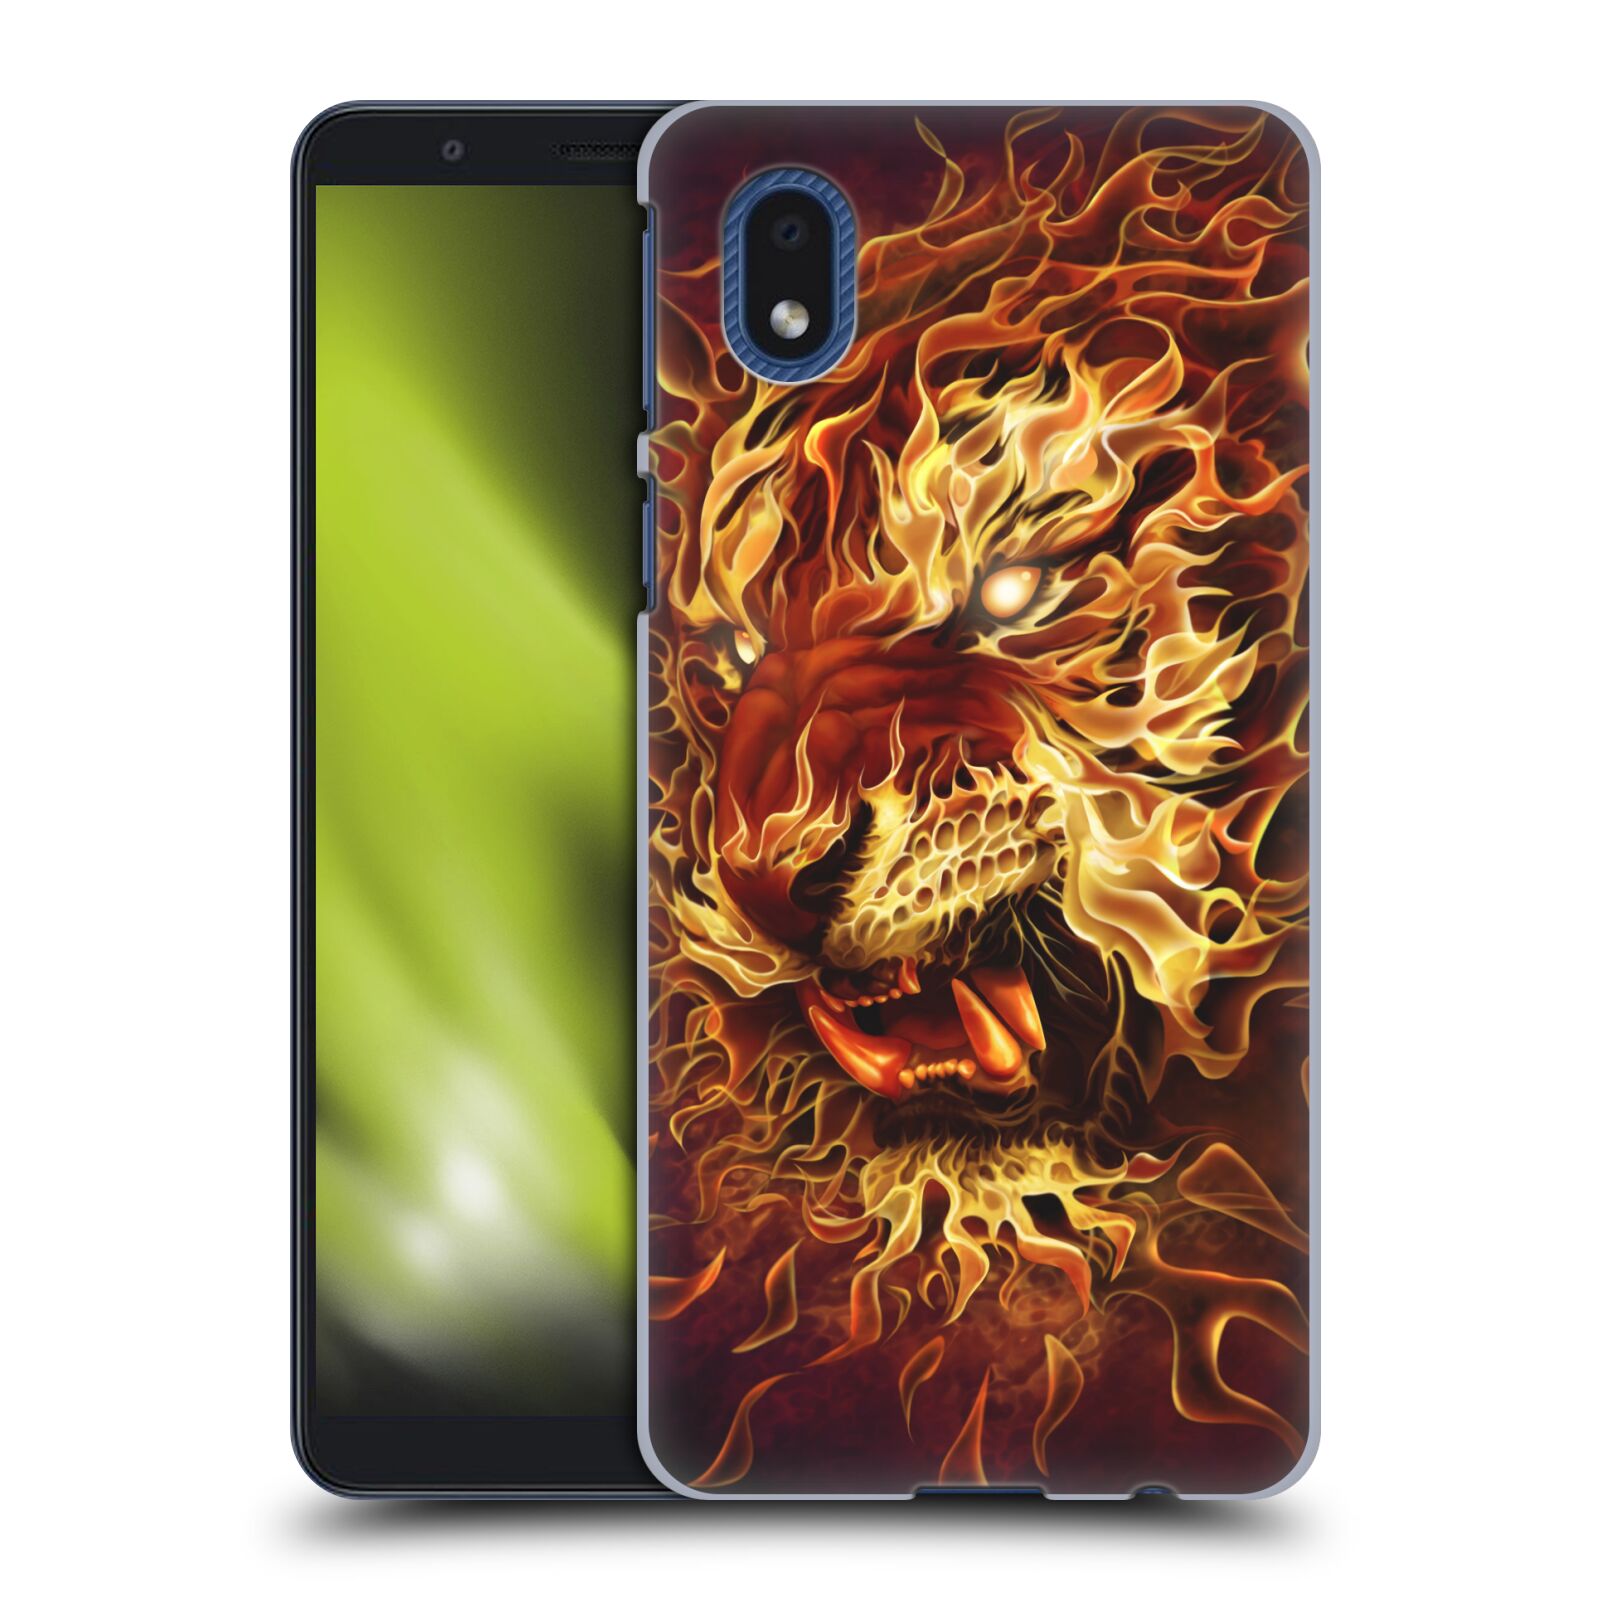 Pouzdro na mobil Samsung Galaxy A01 CORE - HEAD CASE - Fantasy kresby Tom Wood - Ohnivý tygr